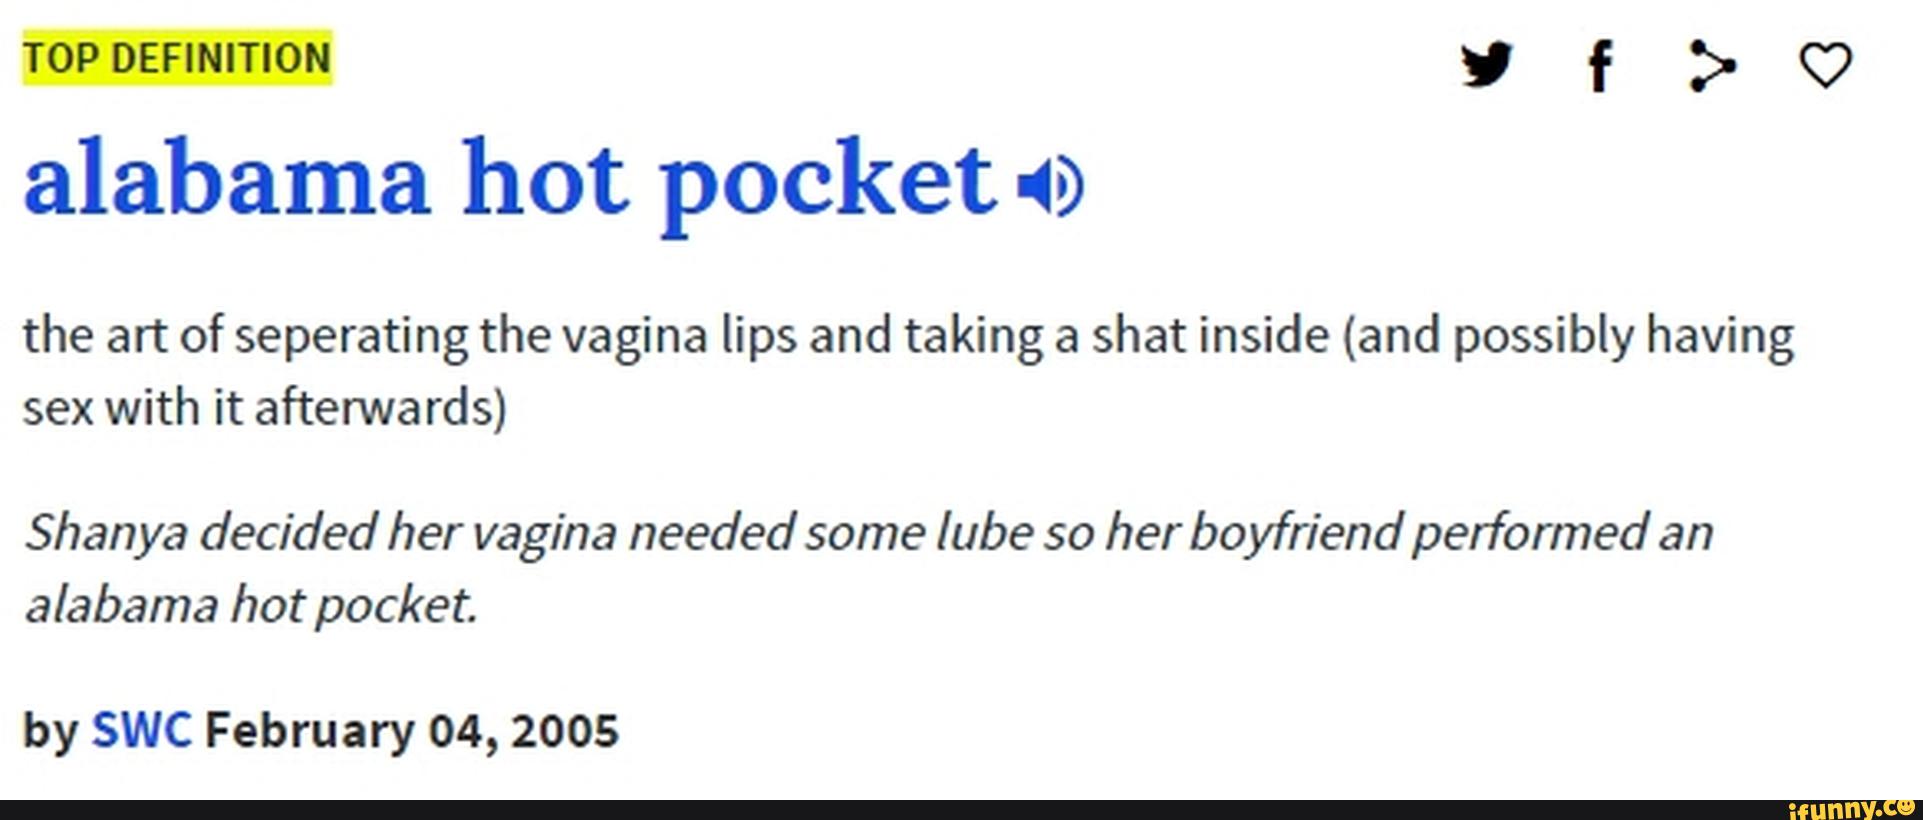 Alabama hot pocket definition